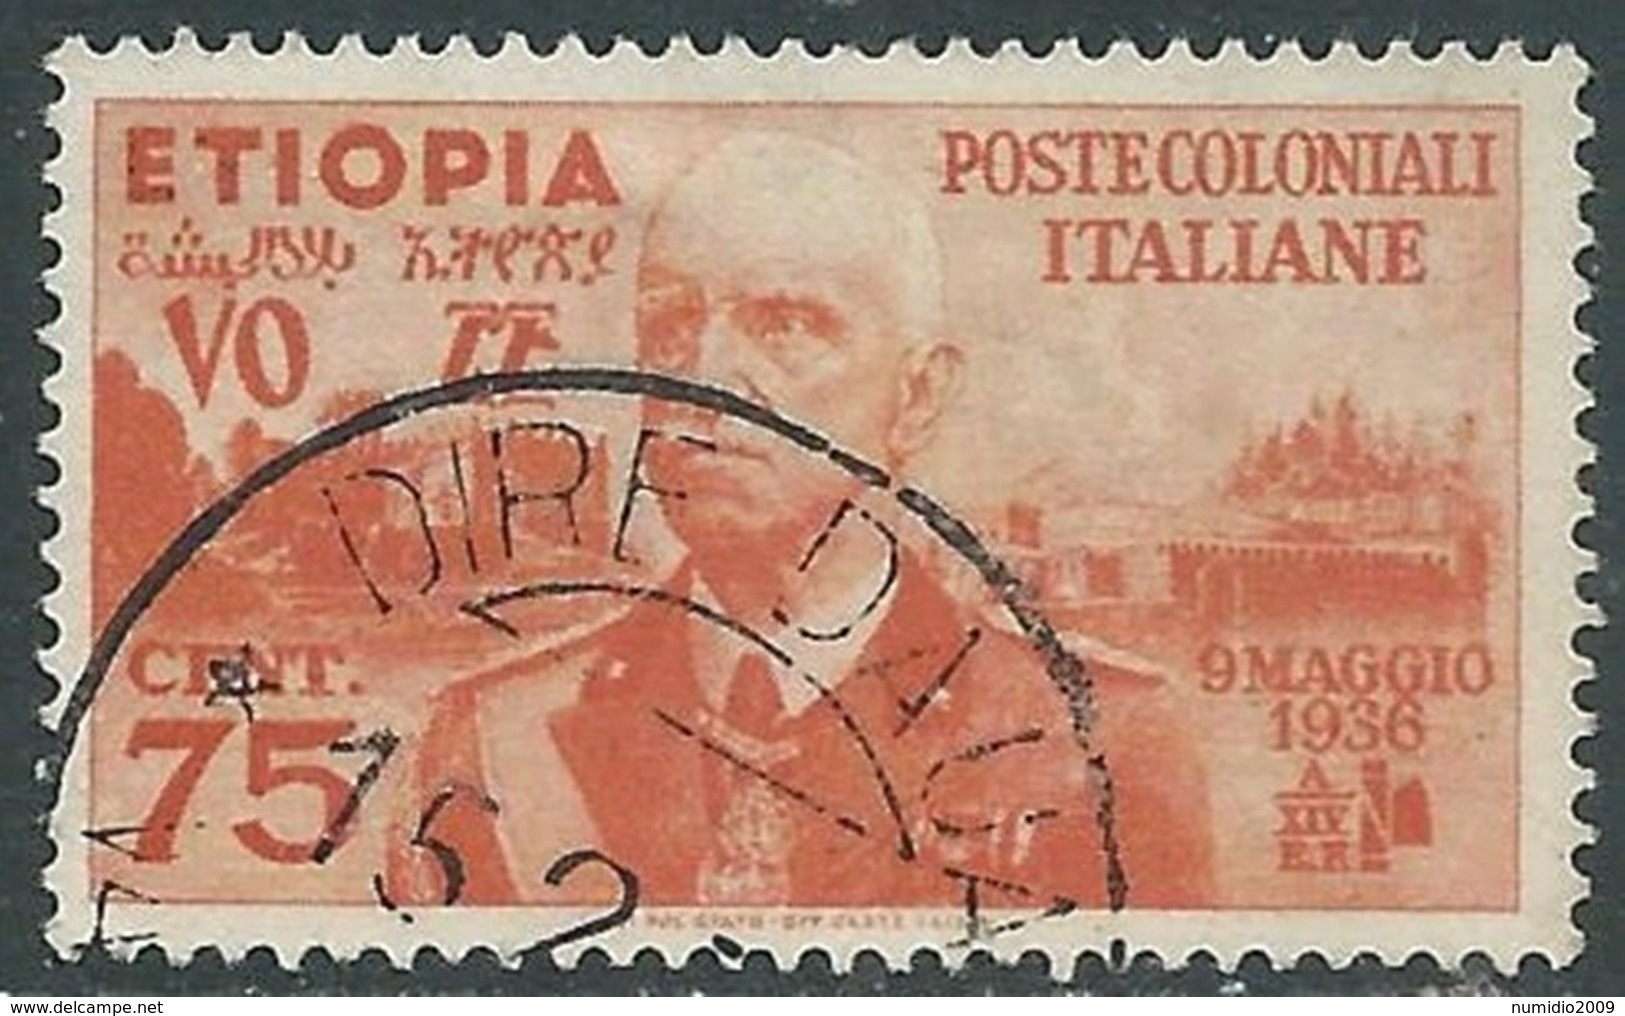 1936 ETIOPIA USATO EFFIGIE 75 CENT - UR31-5 - Ethiopië